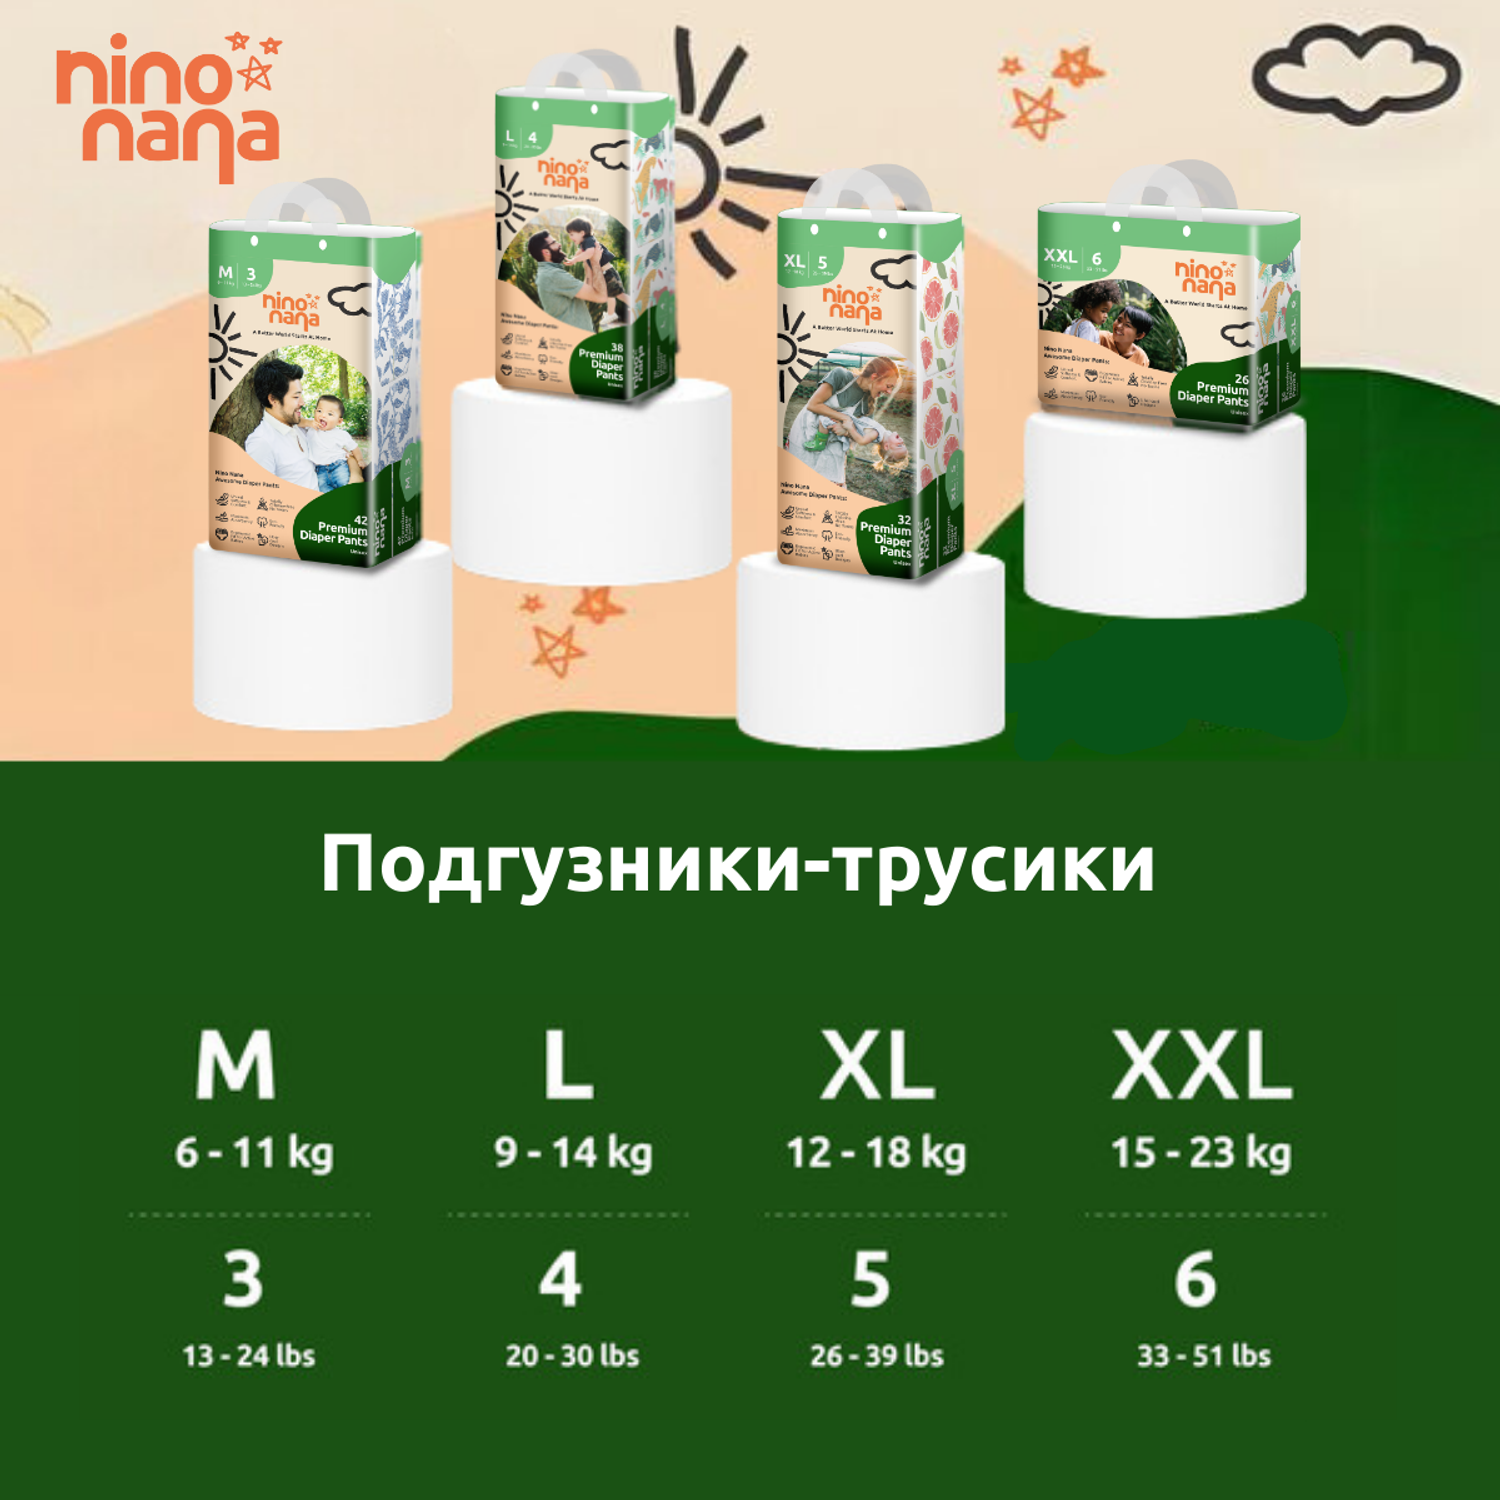 Коробка Подгузников-трусиков Nino Nana XXL 15-23 кг. 78 шт. - фото 2